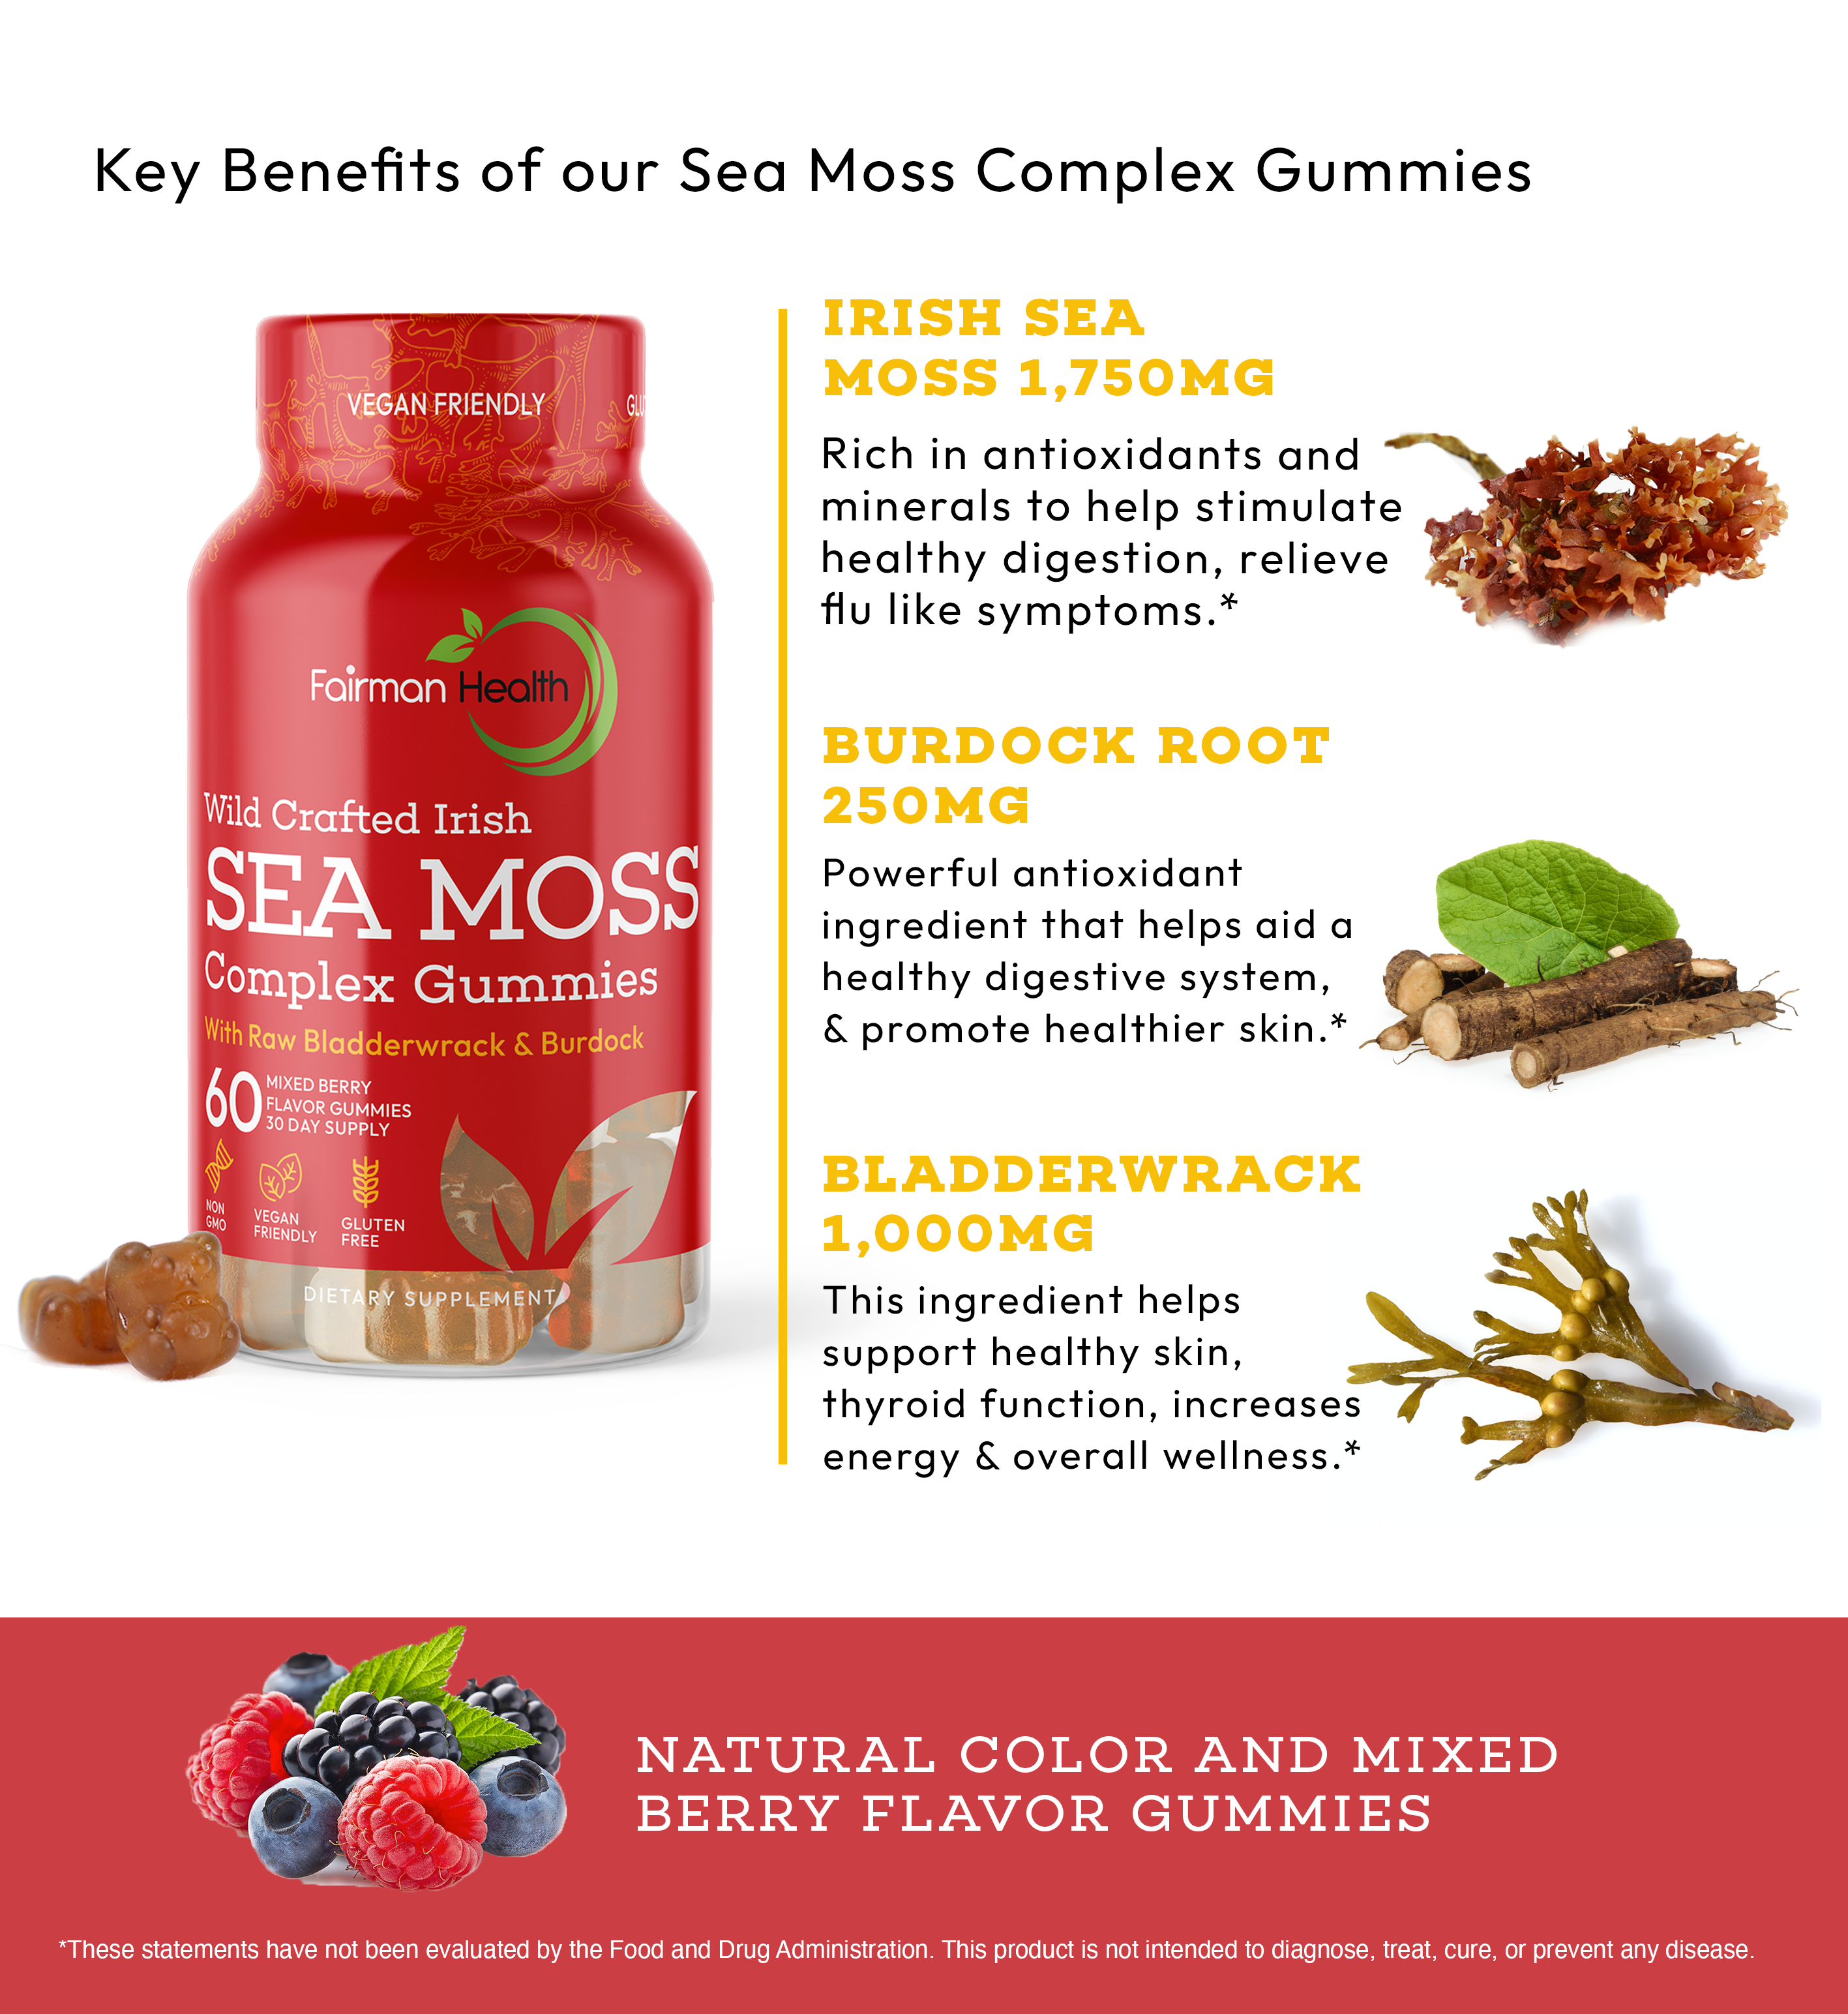 Fairman Health Sea Moss Gummies